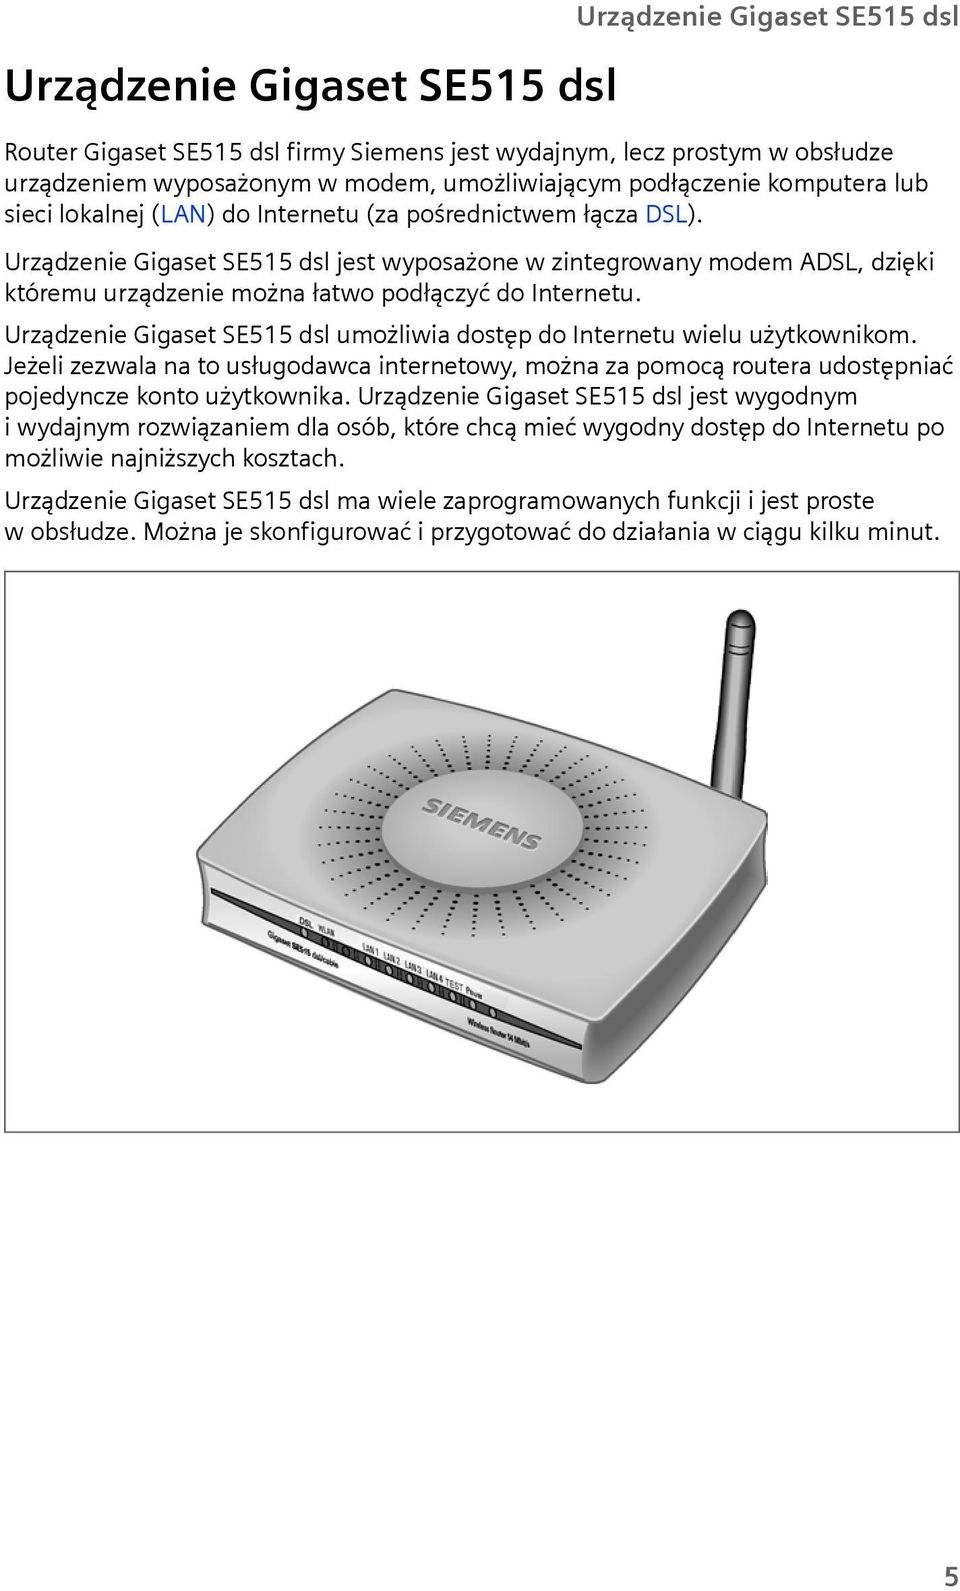 Urządzenie Gigaset SE515 dsl jest wyposażone w zintegrowany modem ADSL, dzięki któremu urządzenie można łatwo podłączyć do Internetu.